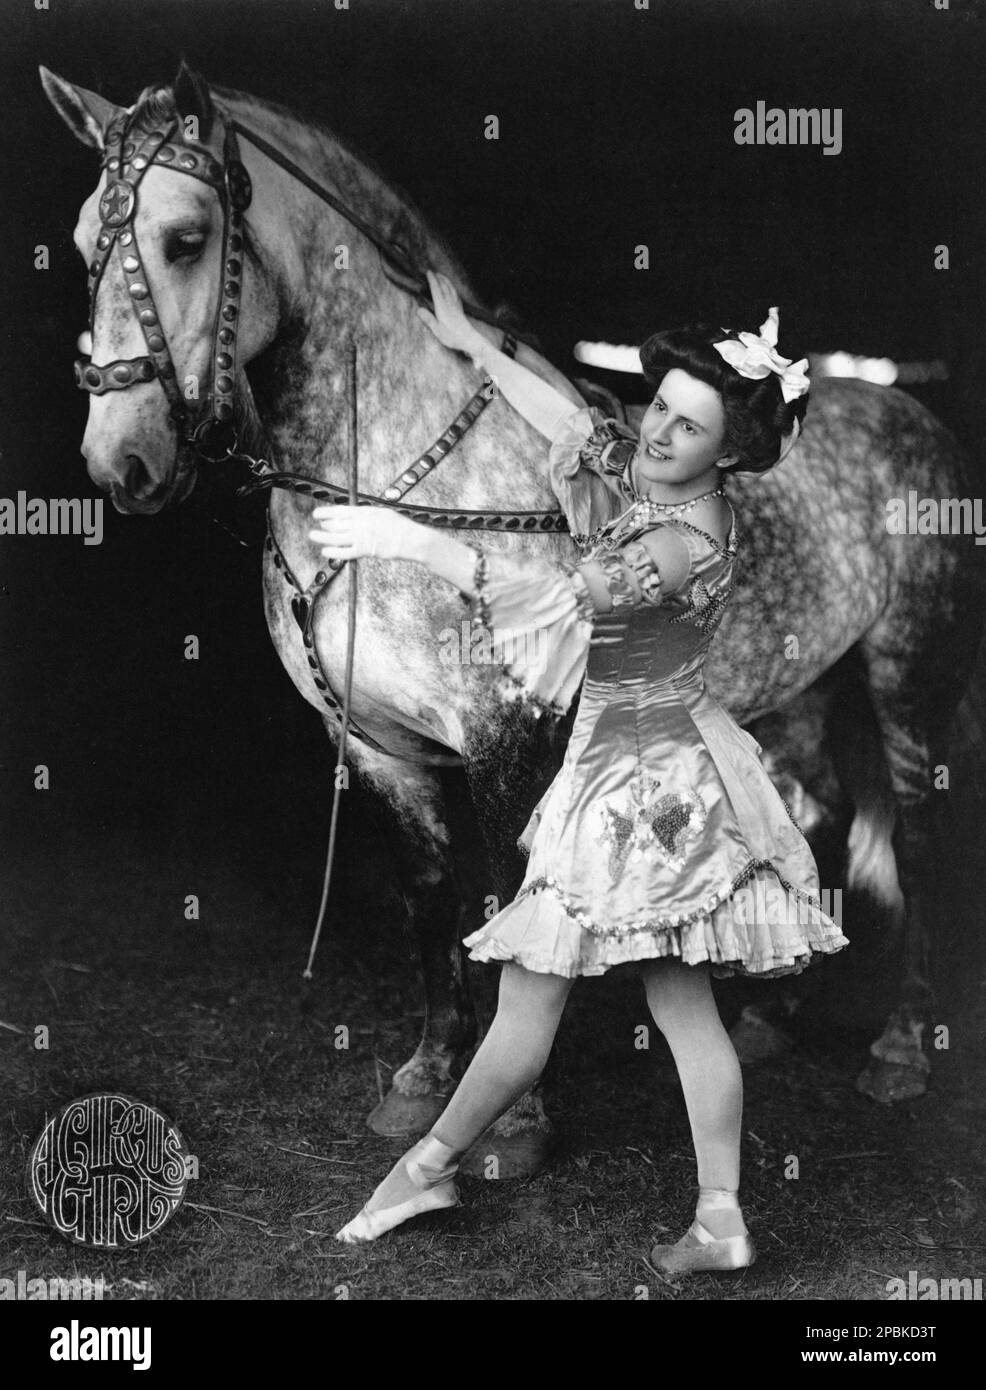 1908 , USA : Una ragazza circus con cavallo . Foto di F. W. Glasier,  Brockton, Mass. - CAVALLO - CAVALLI - domatore - domatrice equestre - CIRCO  - CIRCO - CIRCUS 